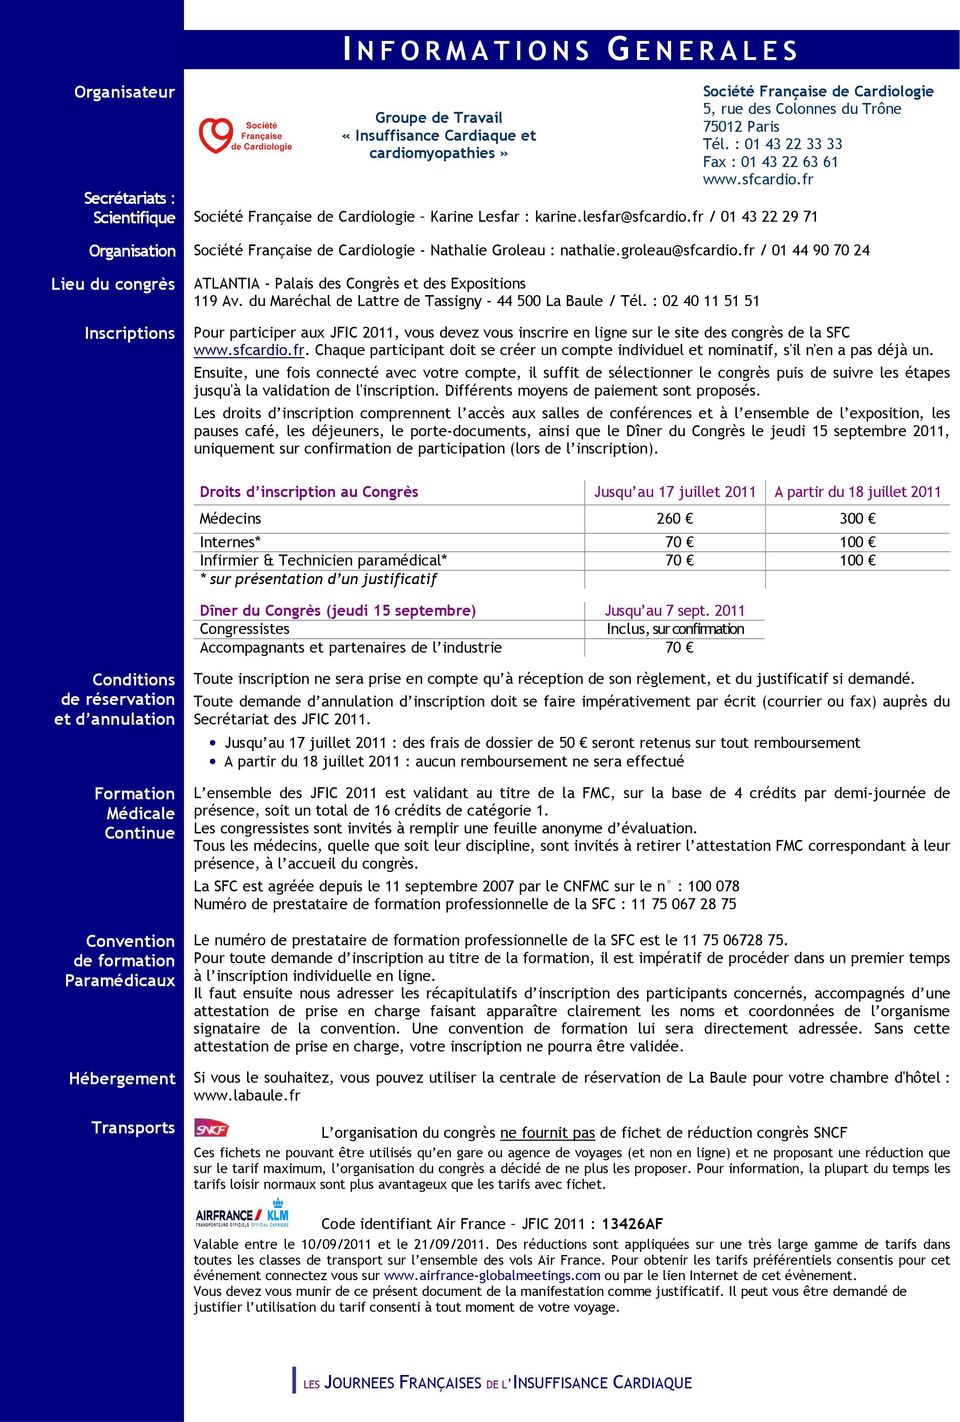 fr / 01 43 22 29 71 Organisation Société Française de Cardiologie - Nathalie Groleau : nathalie.groleau@sfcardio.